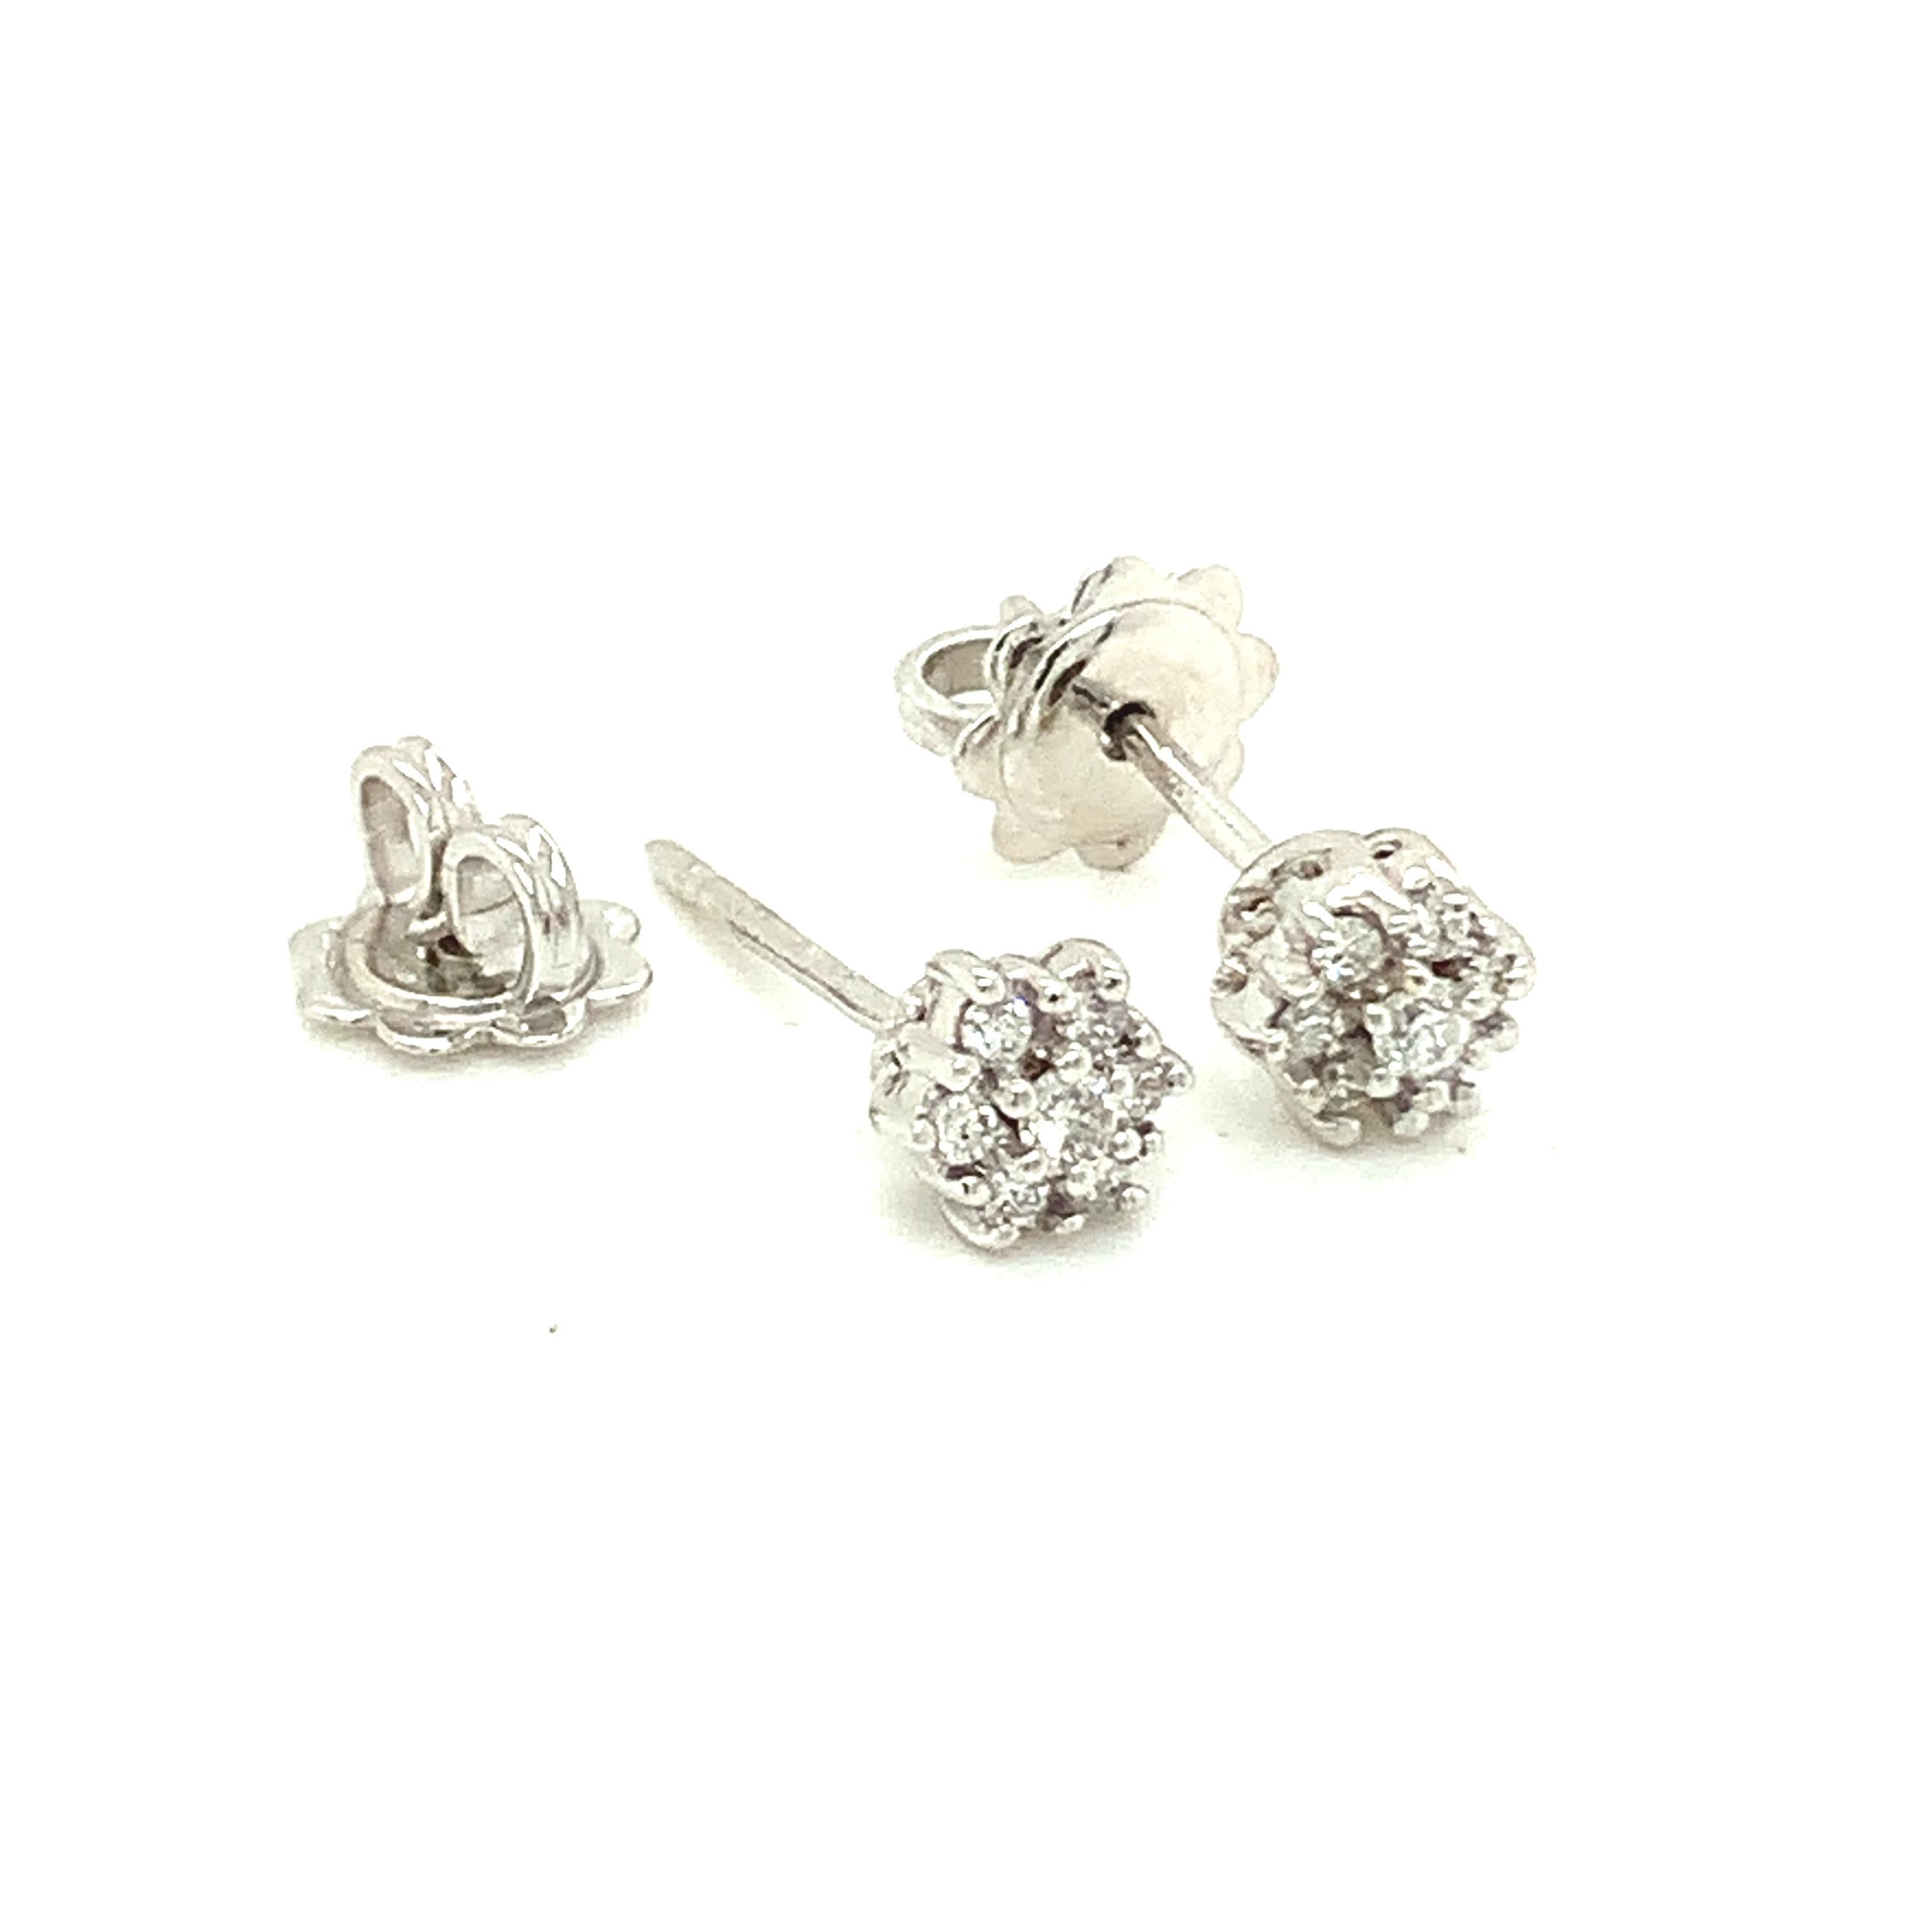 Contemporary 18 Karat White Gold White Diamonds Garavelli Flower Stud Earrings For Sale